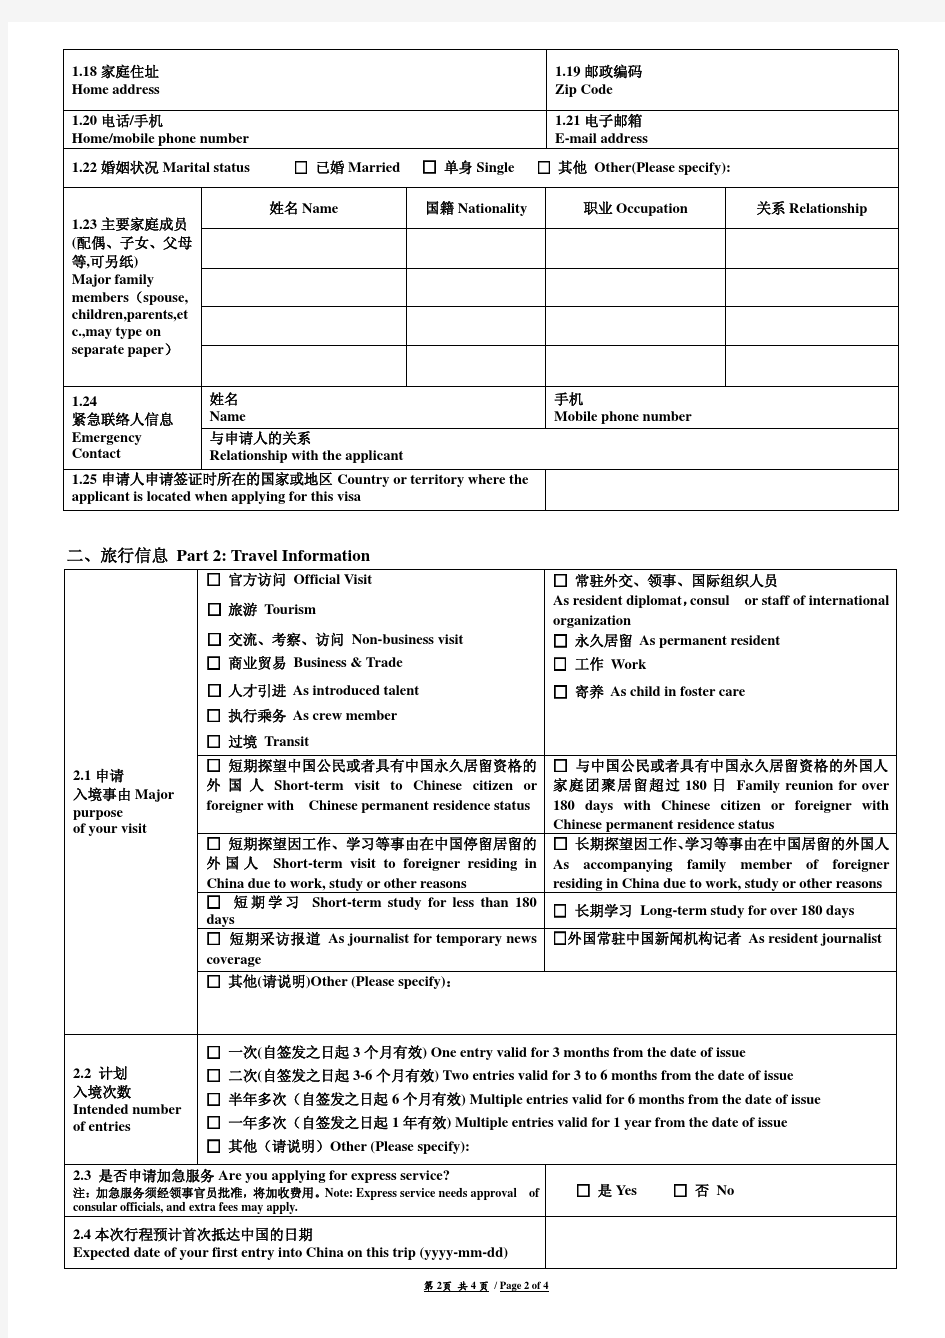 中国签证申请表格